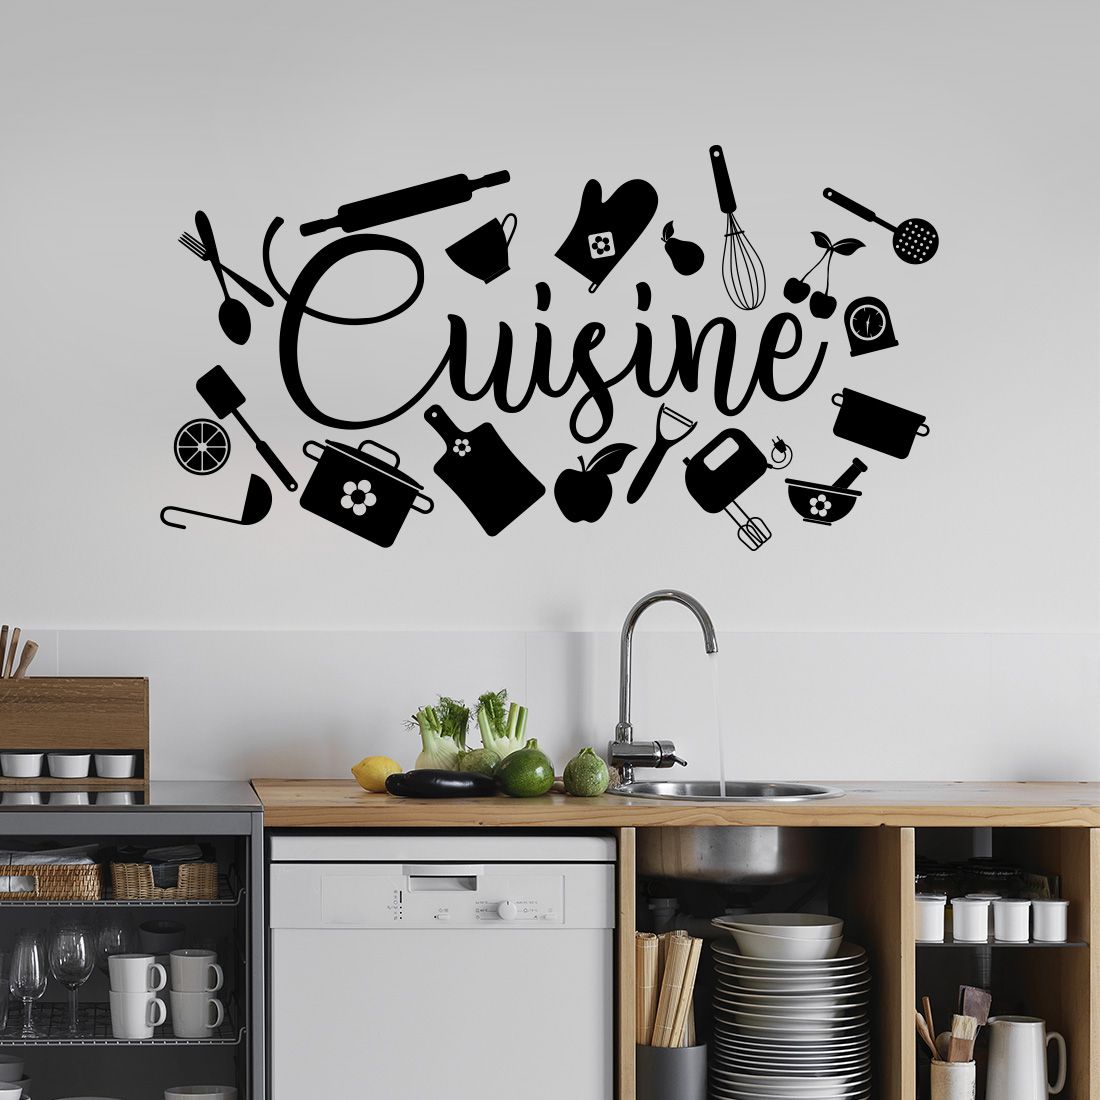 Stickers muraux cuisine - Sticker texte thème culinaire et cuisine   Decoration mur cuisine, Décoration murale cuisine, Stickers muraux cuisine